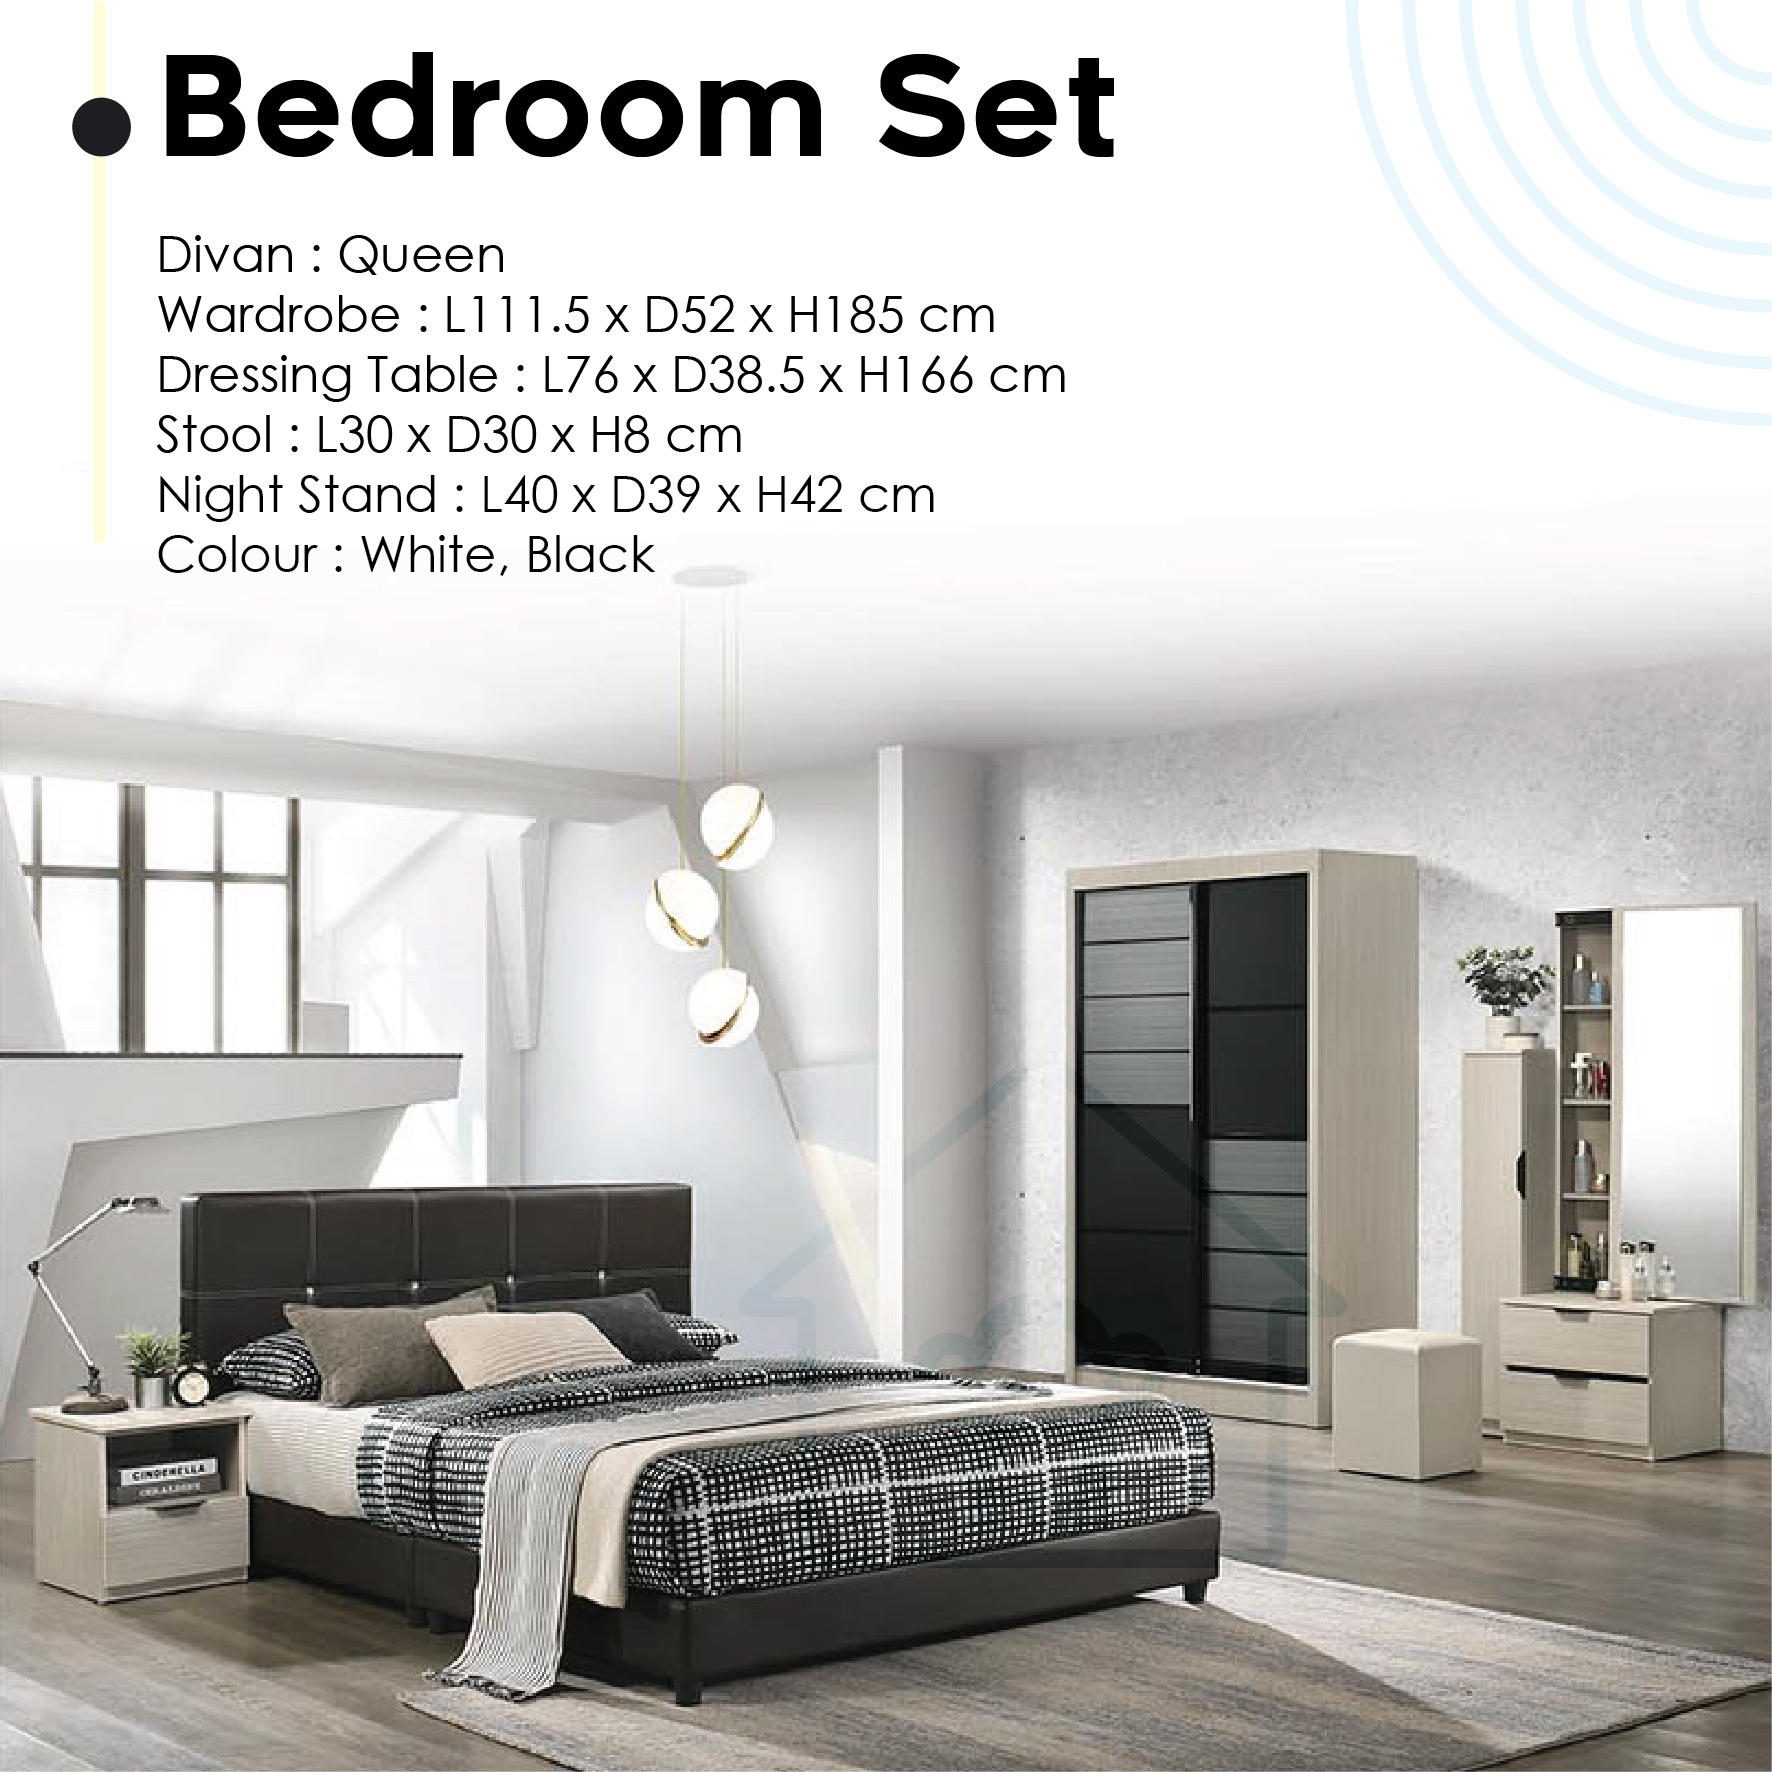 bedroom set / new modern bedroom furniture / wardrobe / bedframe / bed with mattress / room set / bedroom furniture